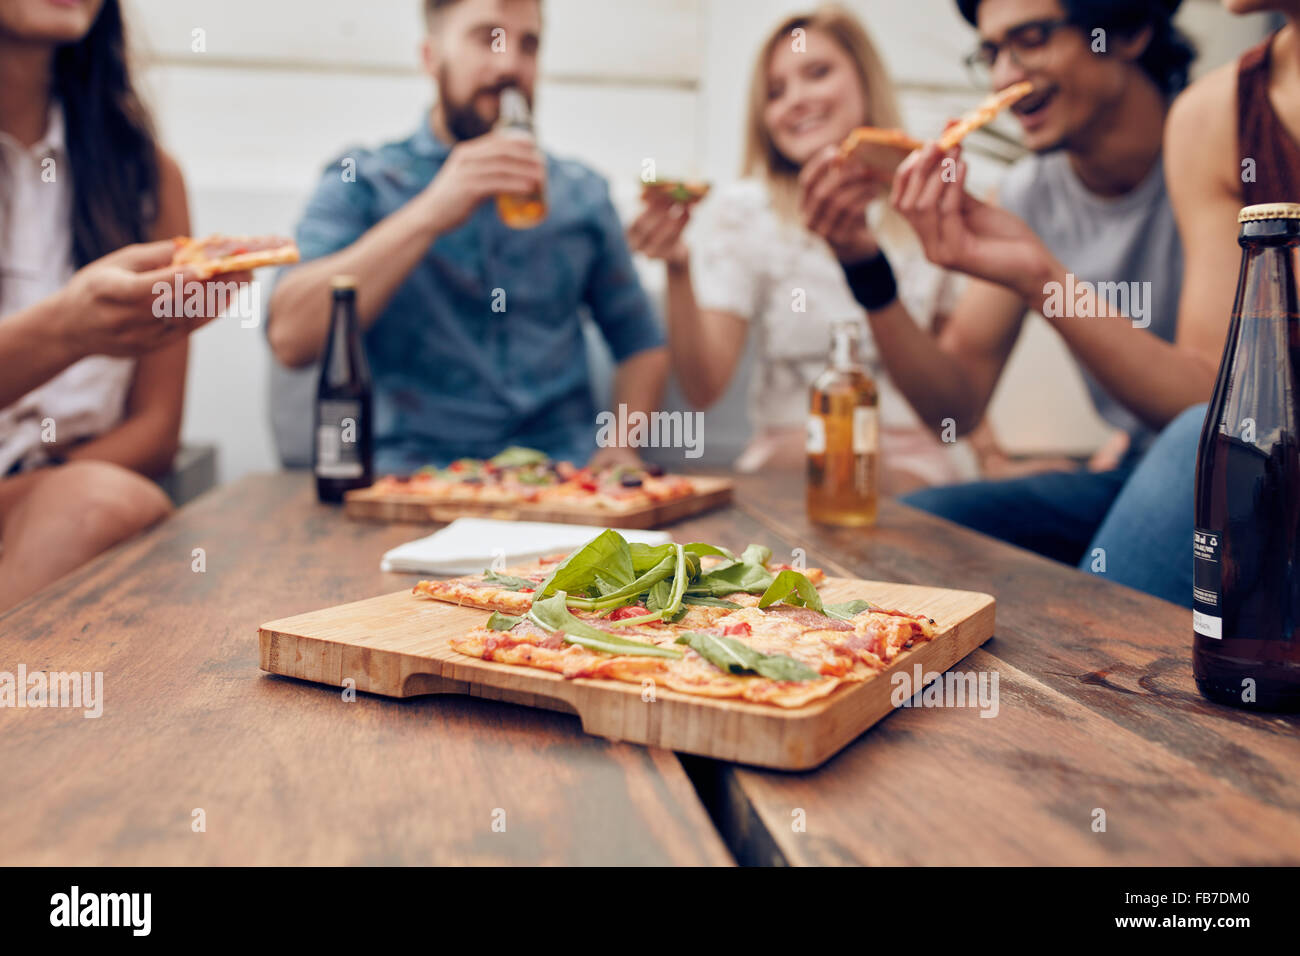 Gros plan de la pizza sur la plaque en bois avec des gens boire et manger dans l'arrière-plan. Groupe d'amis réunis autour de la table Banque D'Images